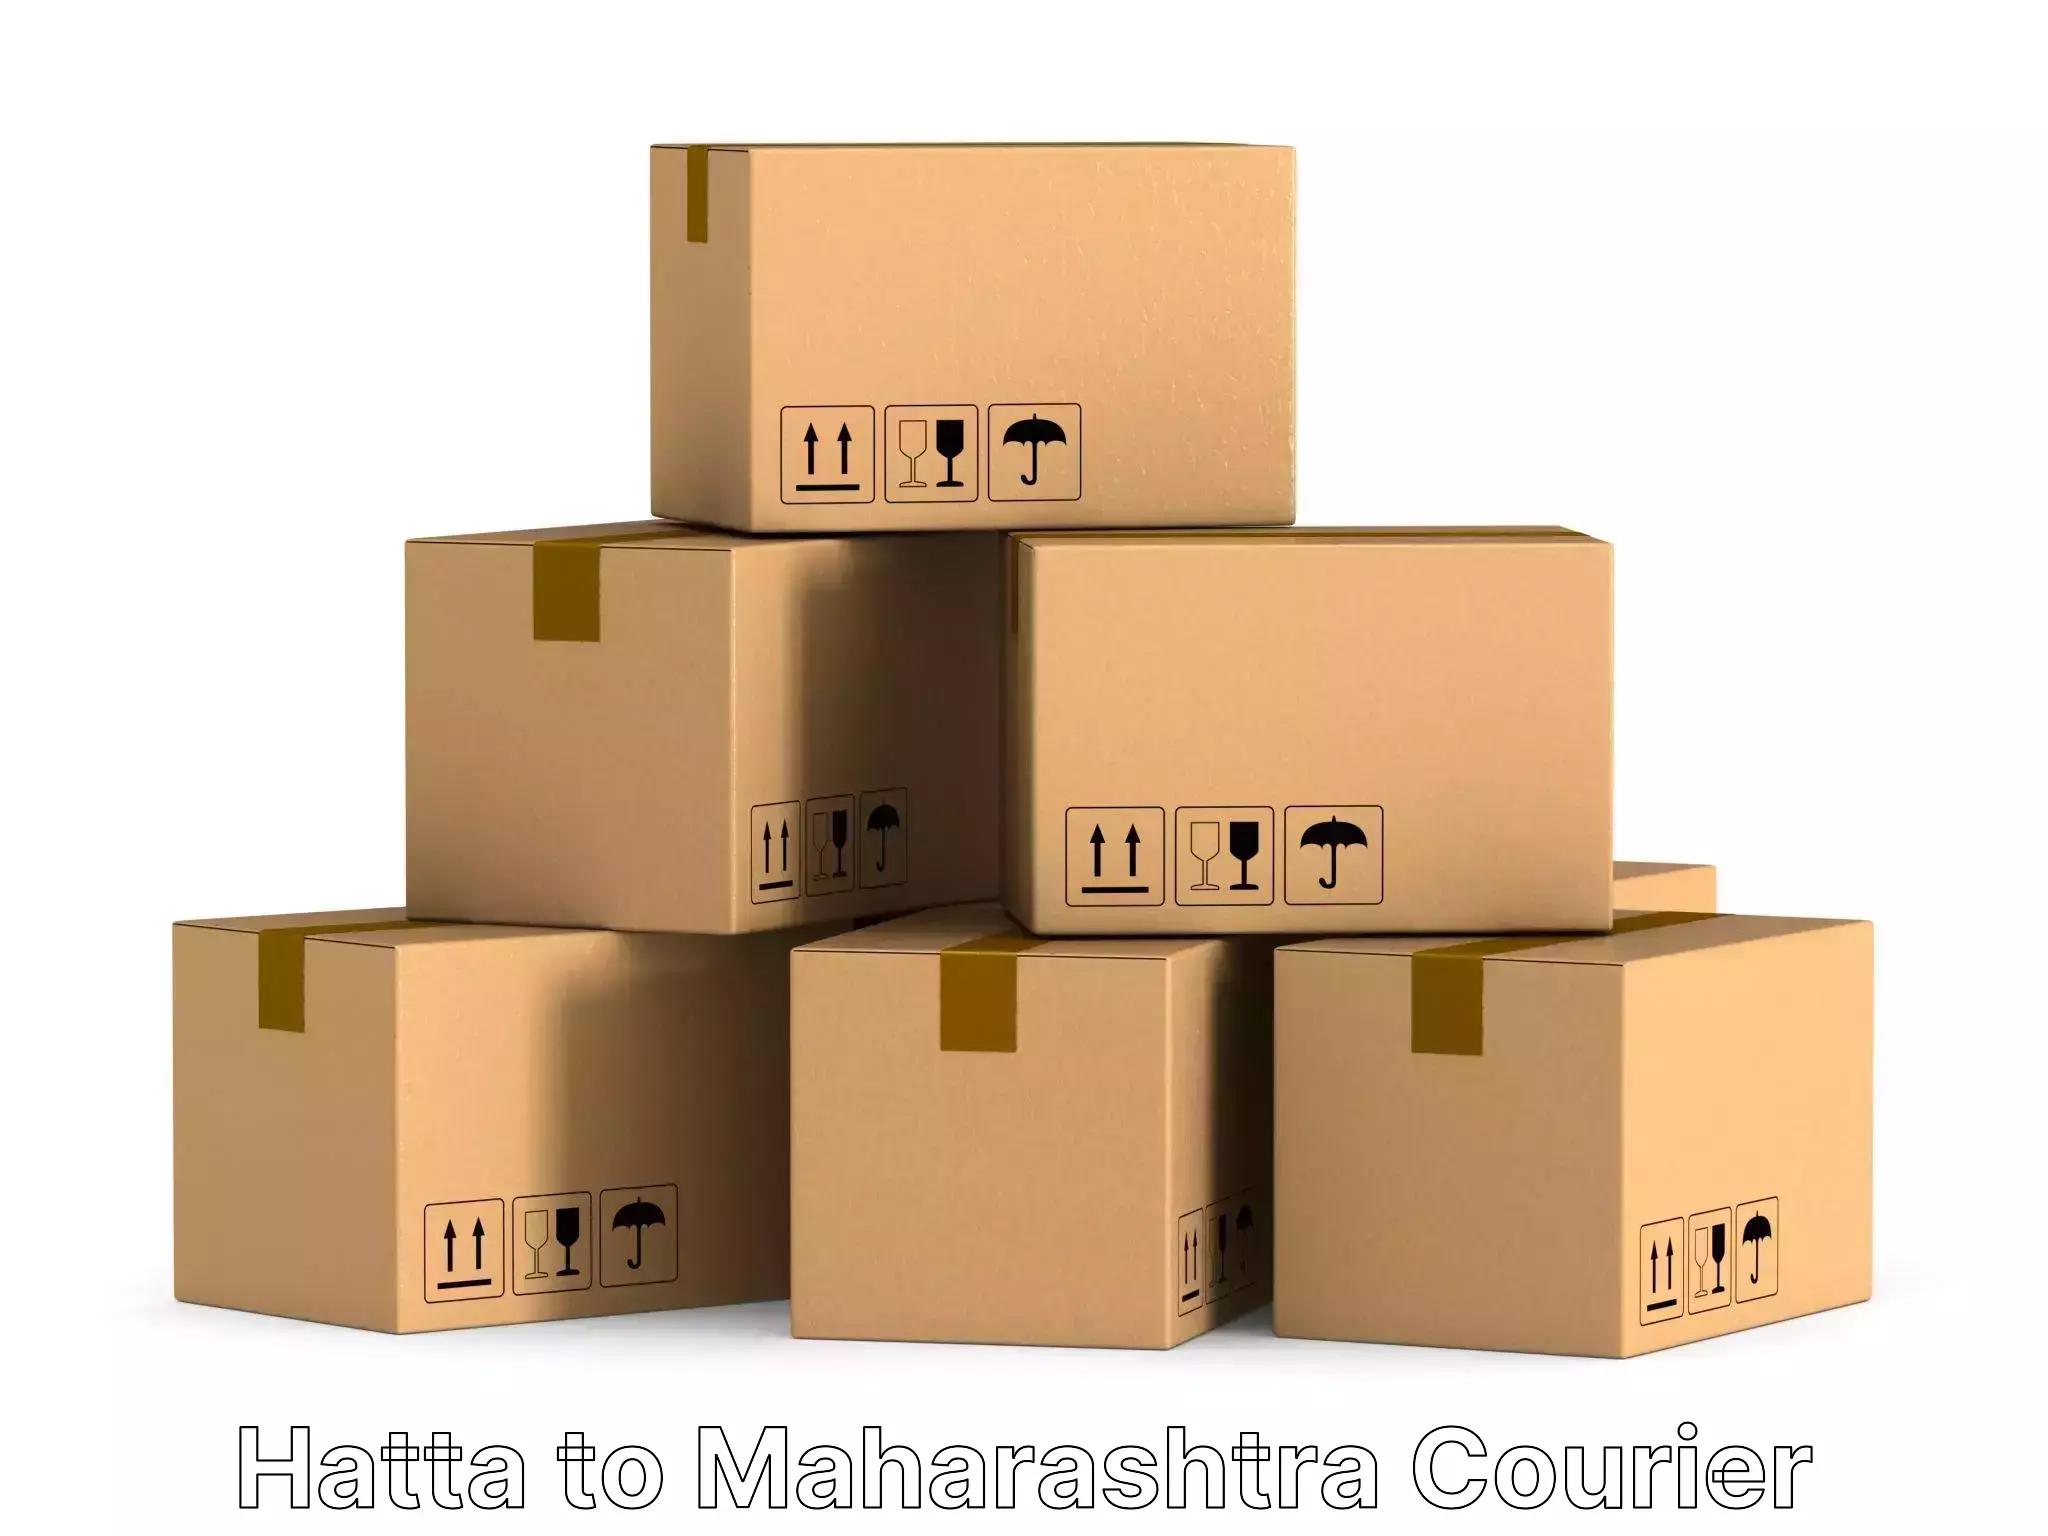 Professional moving company Hatta to Maharashtra